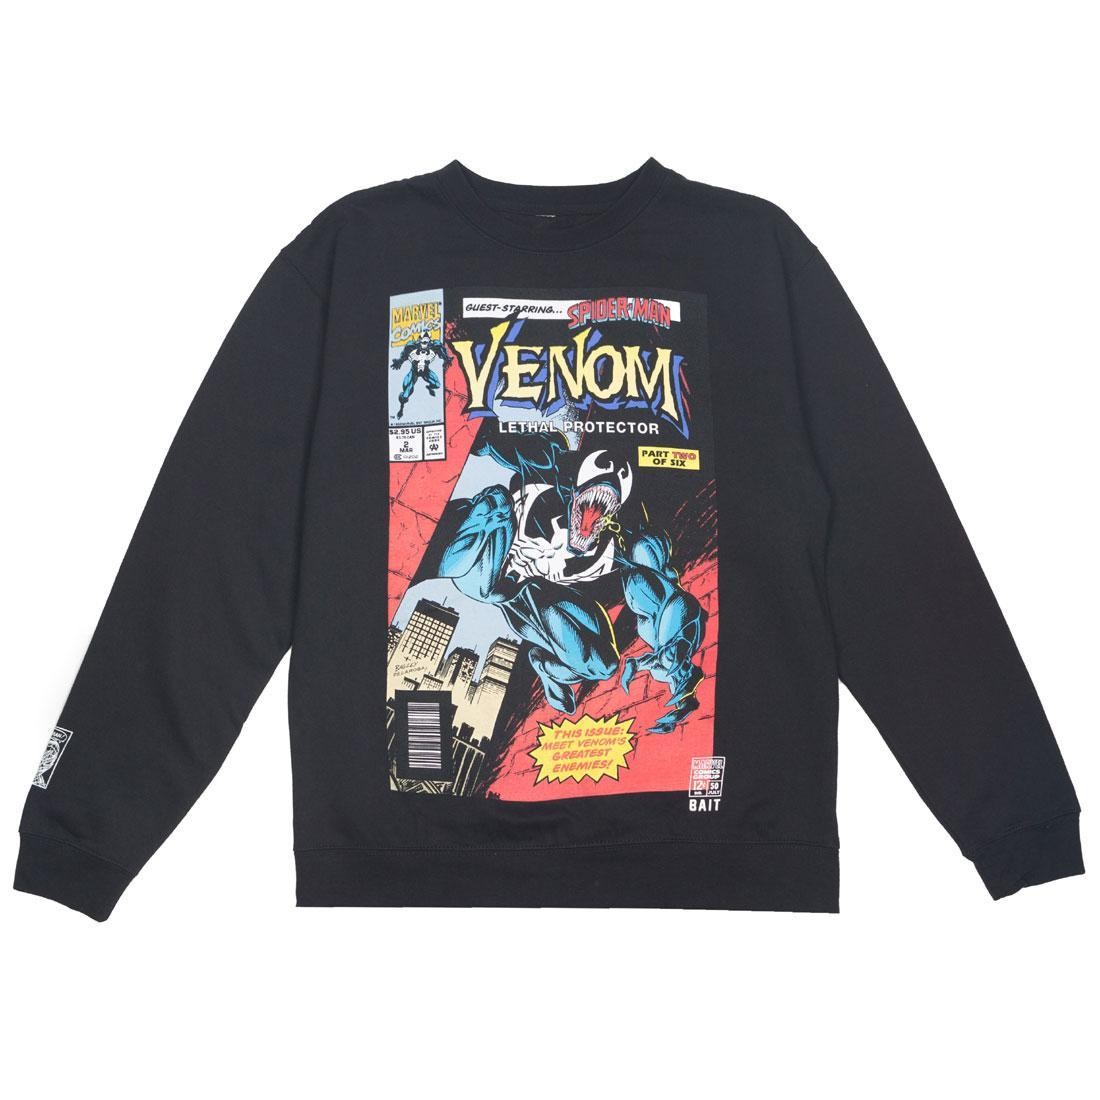 Nike Sportswear Tuta nero grigio sfumato Men Venom Lethal Protector #2 Crew sweater LVIR (black)